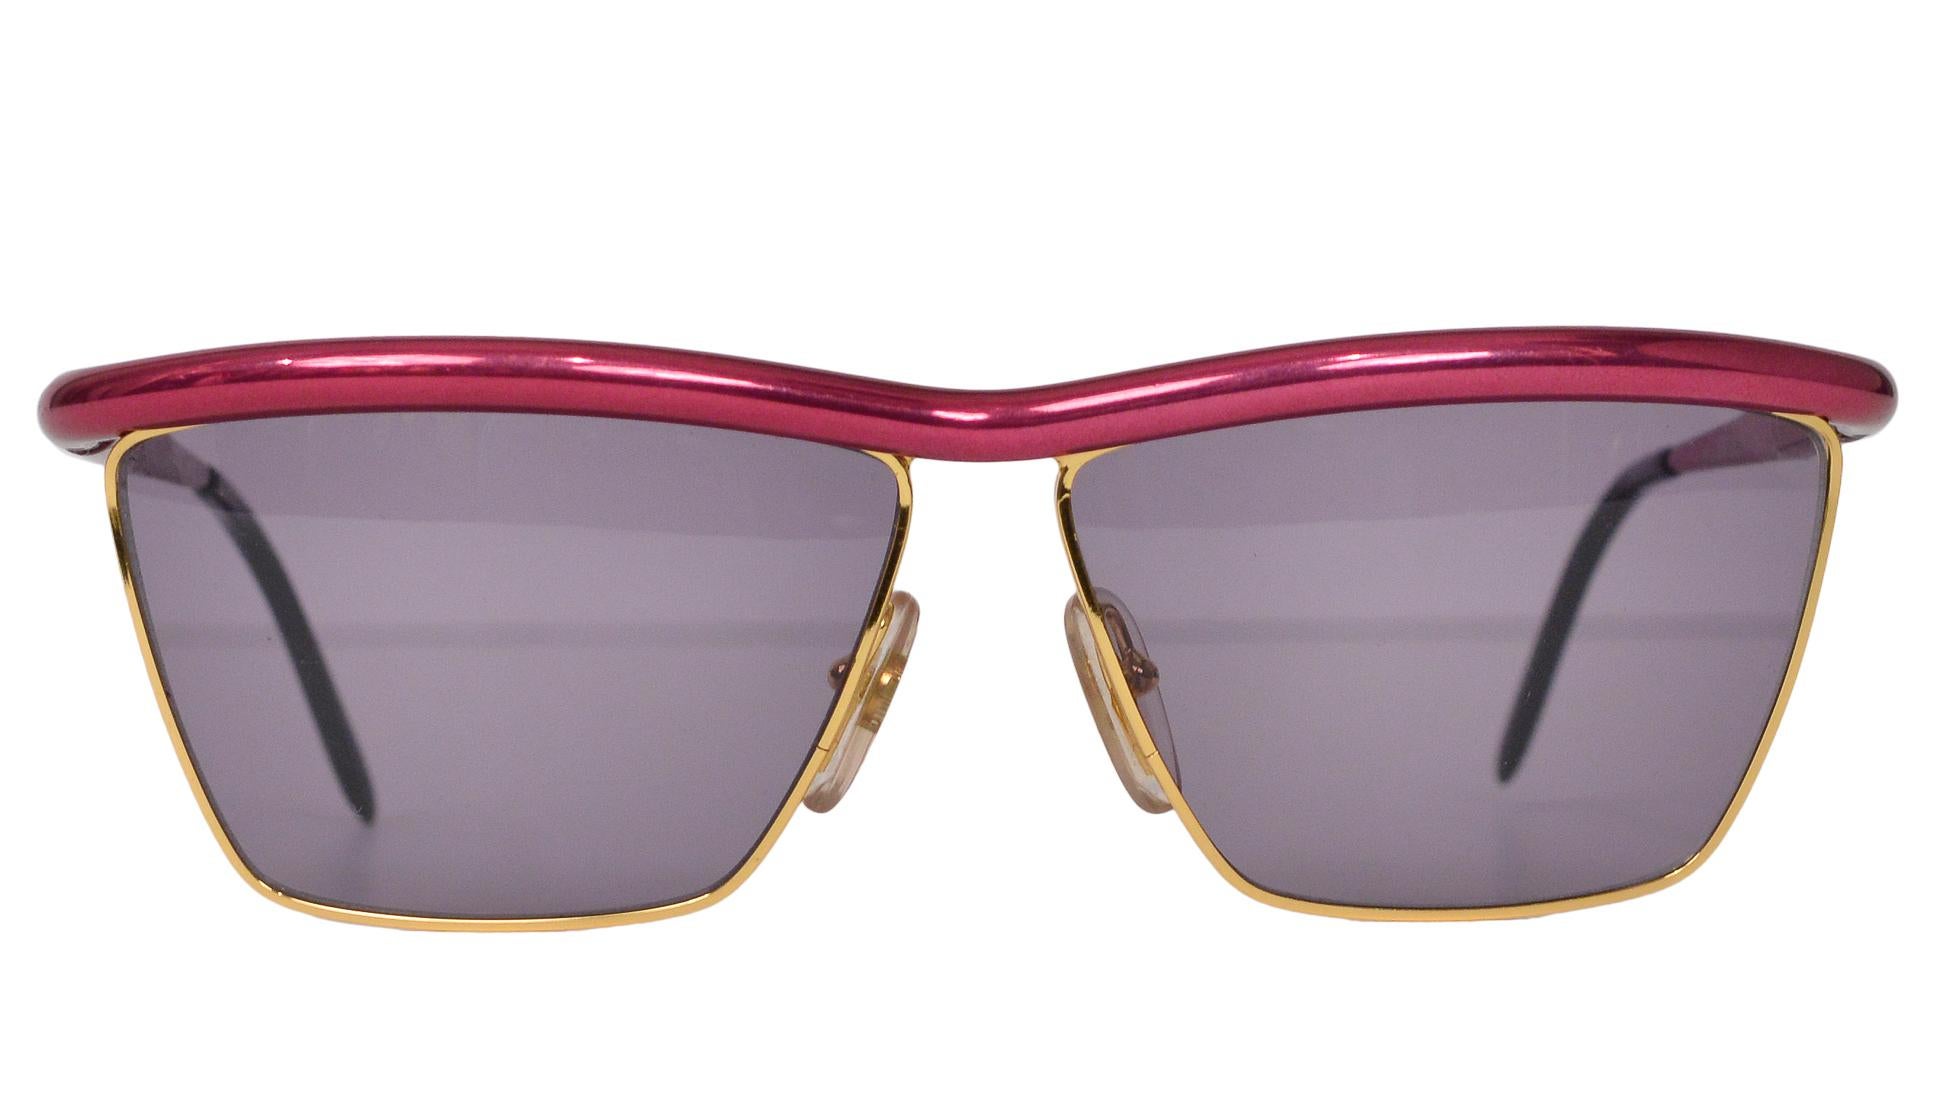 Resurrection Vintage freut sich, eine quadratische Sonnenbrille von Gianfranco Ferré aus goldfarbenem Metall mit rosafarbener Augenbrauenleiste und rauchigen Gläsern anbieten zu können. 

Gianfranco Ferré
Hergestellt in Italien
Ausgezeichneter